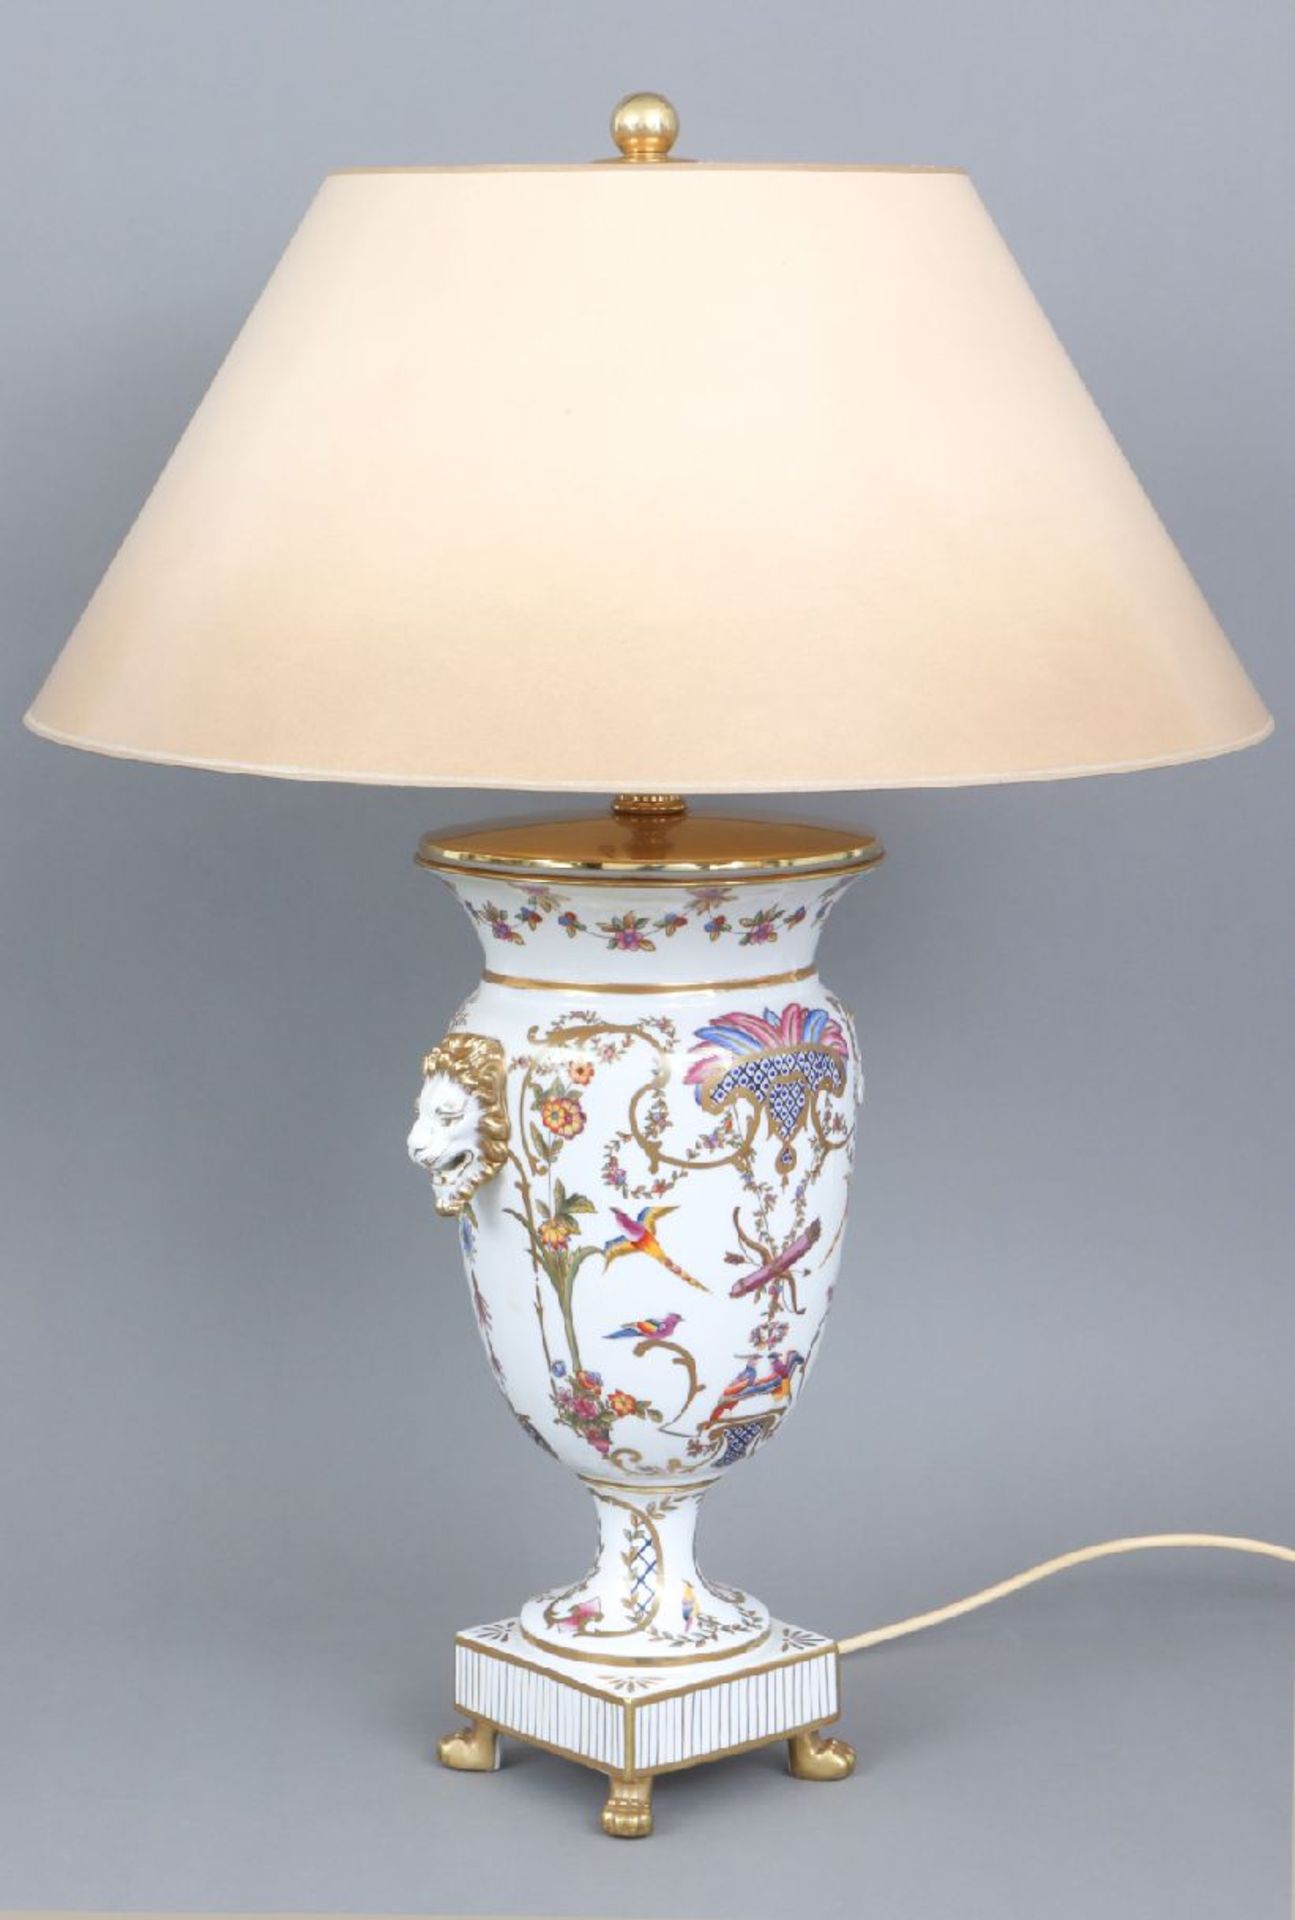 Tischlampe, Porzellanwohl GINORI, Italien, vasenförmiger Korpus im Stile des Empire, 2 seitliche - Image 4 of 7